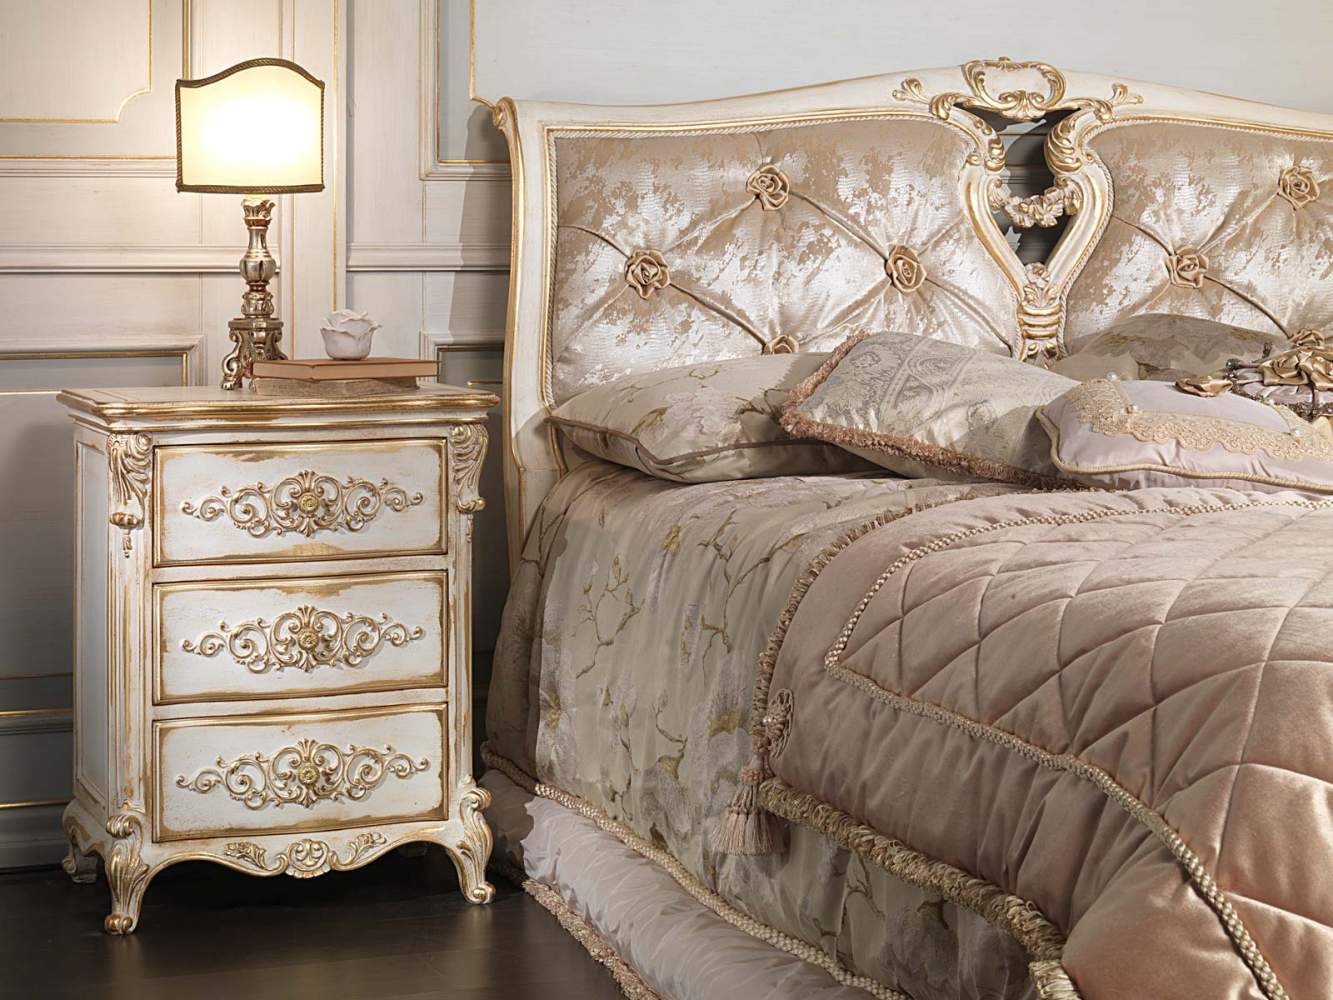 Camera da letto classica in stile Luigi XVI, letto capitonnè con rose e legno intagliato, comodino intagliato, lenzuola coordinate